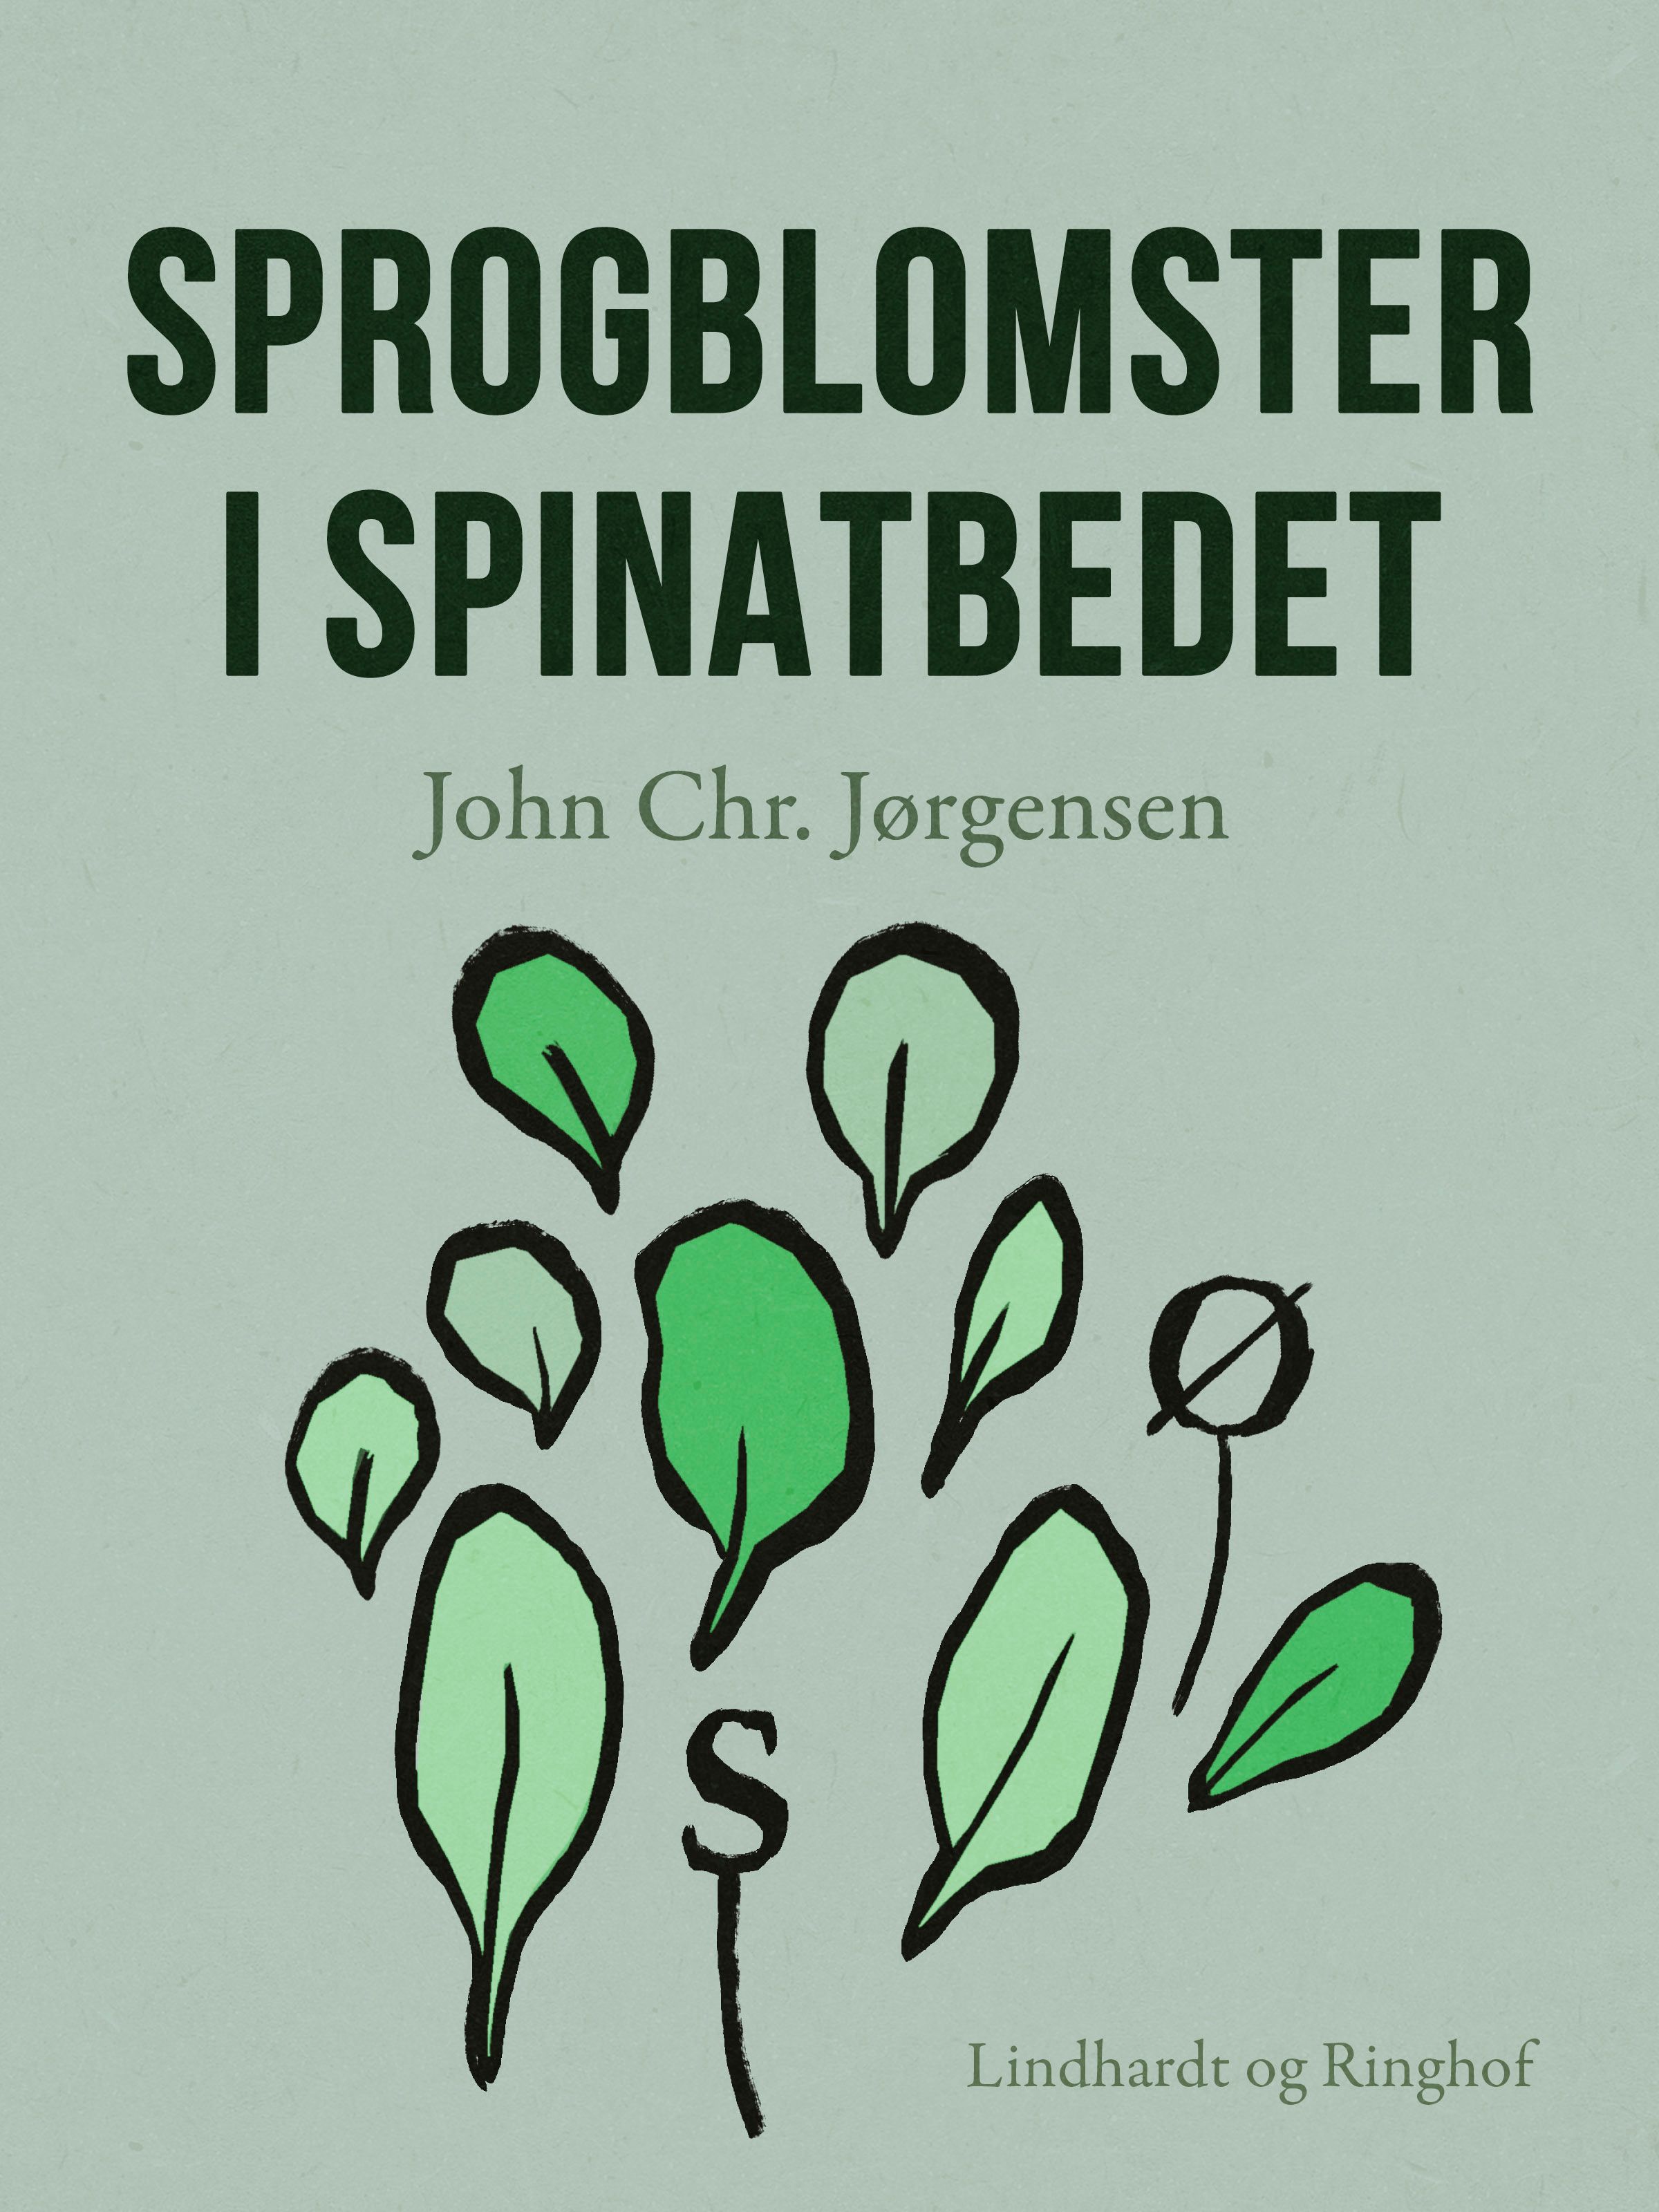 Sprogblomster i spinatbedet, e-bog af John Chr. Jørgensen